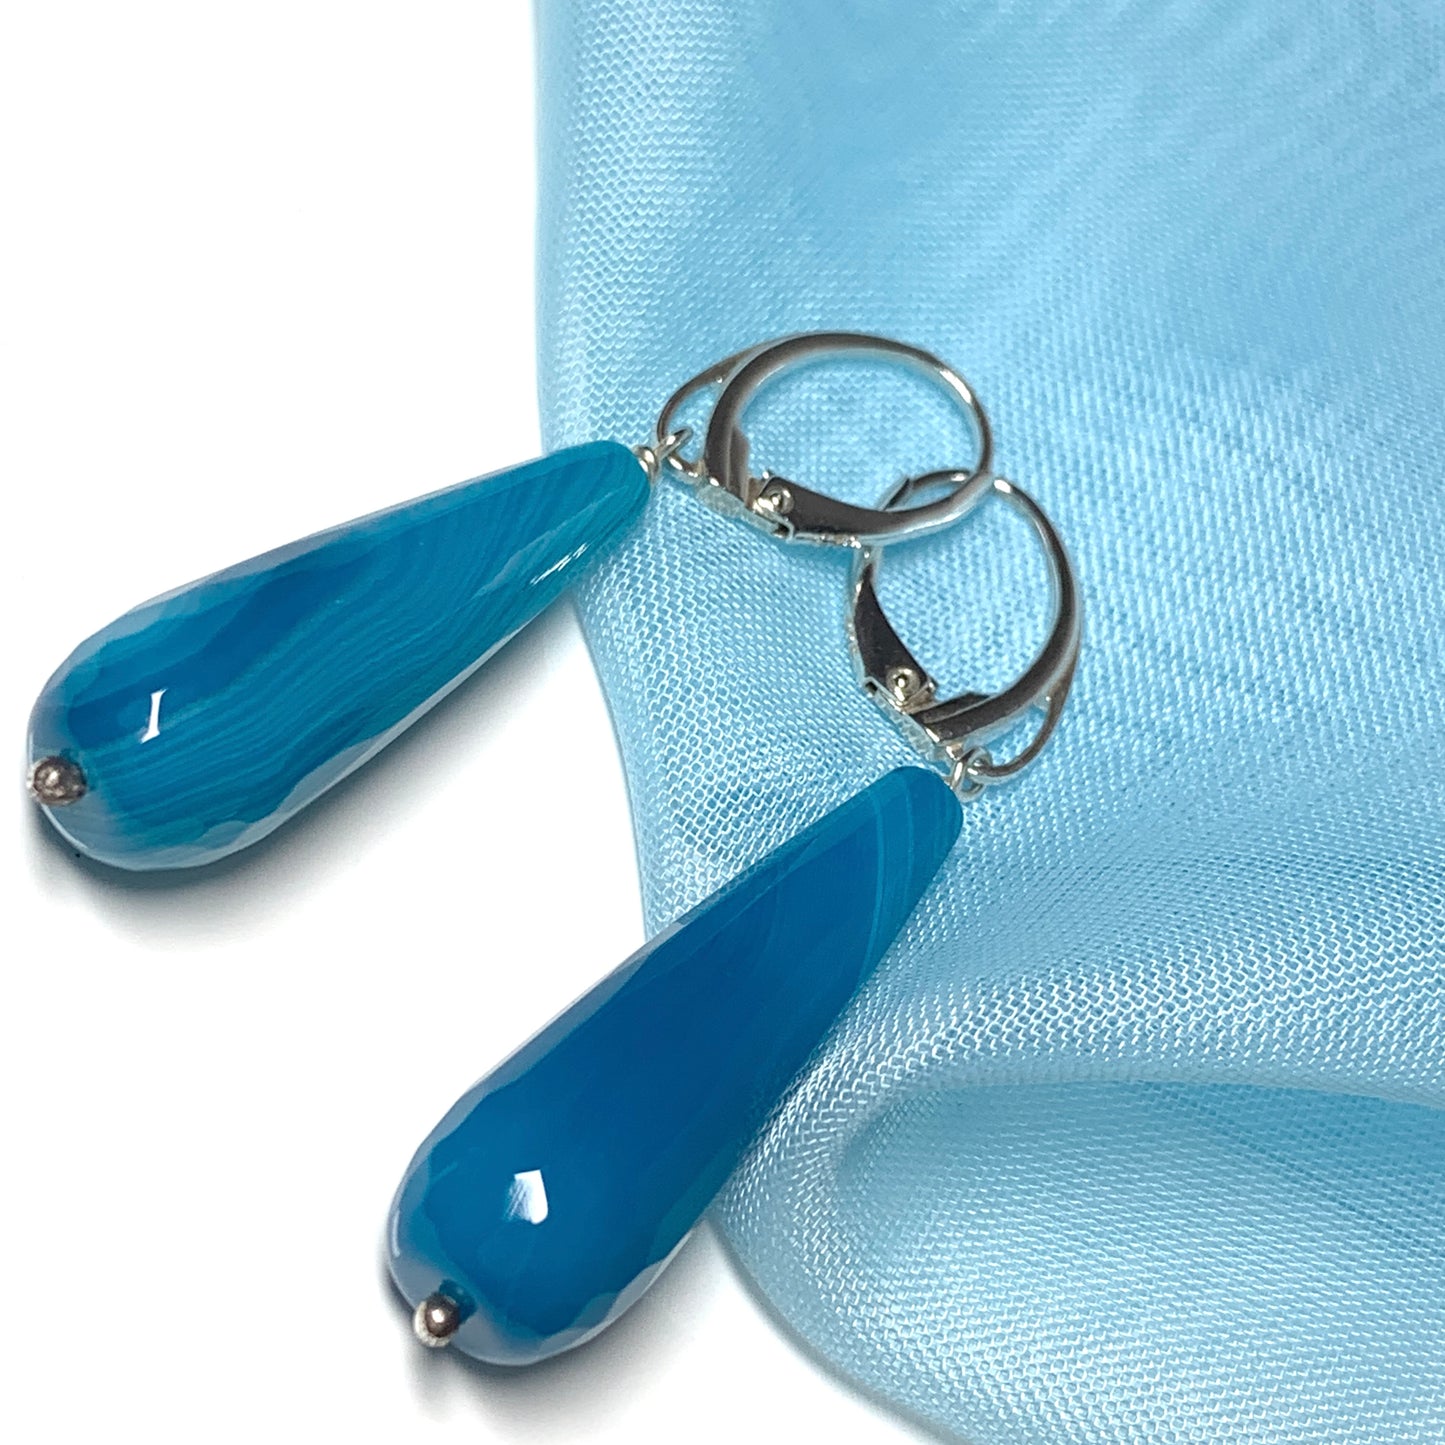 Light blue teardrop shaped agate long drop earrings